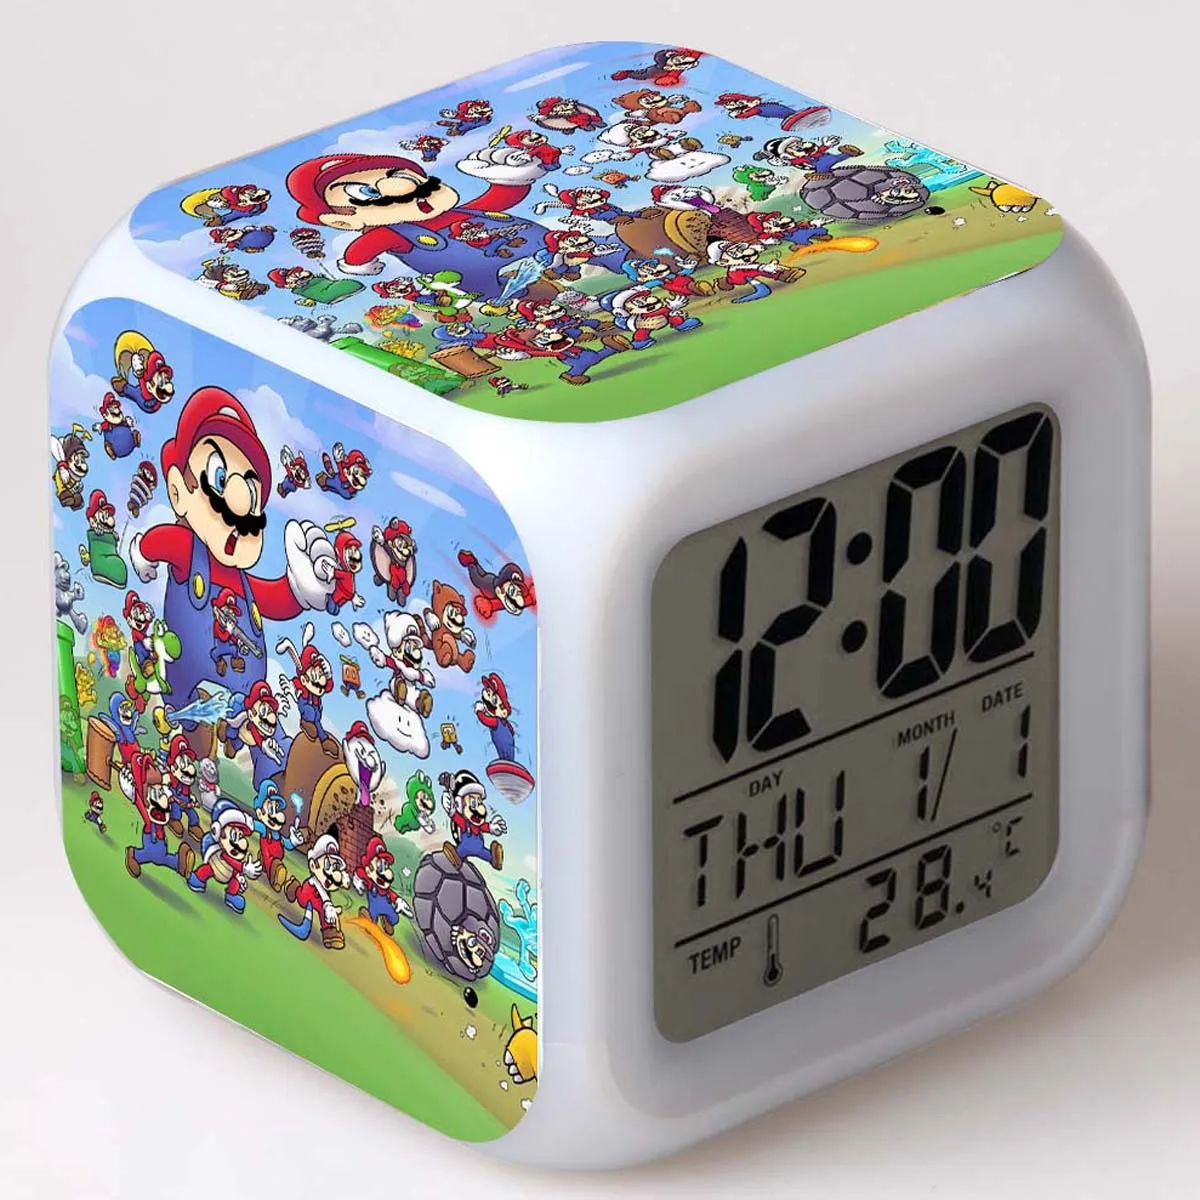 Лучшие продажи продуктов детский будильник светодиодный Изменение цвета освещения Super Mario Bros цифровые часы детские игрушки wekker reveil - Цвет: 20